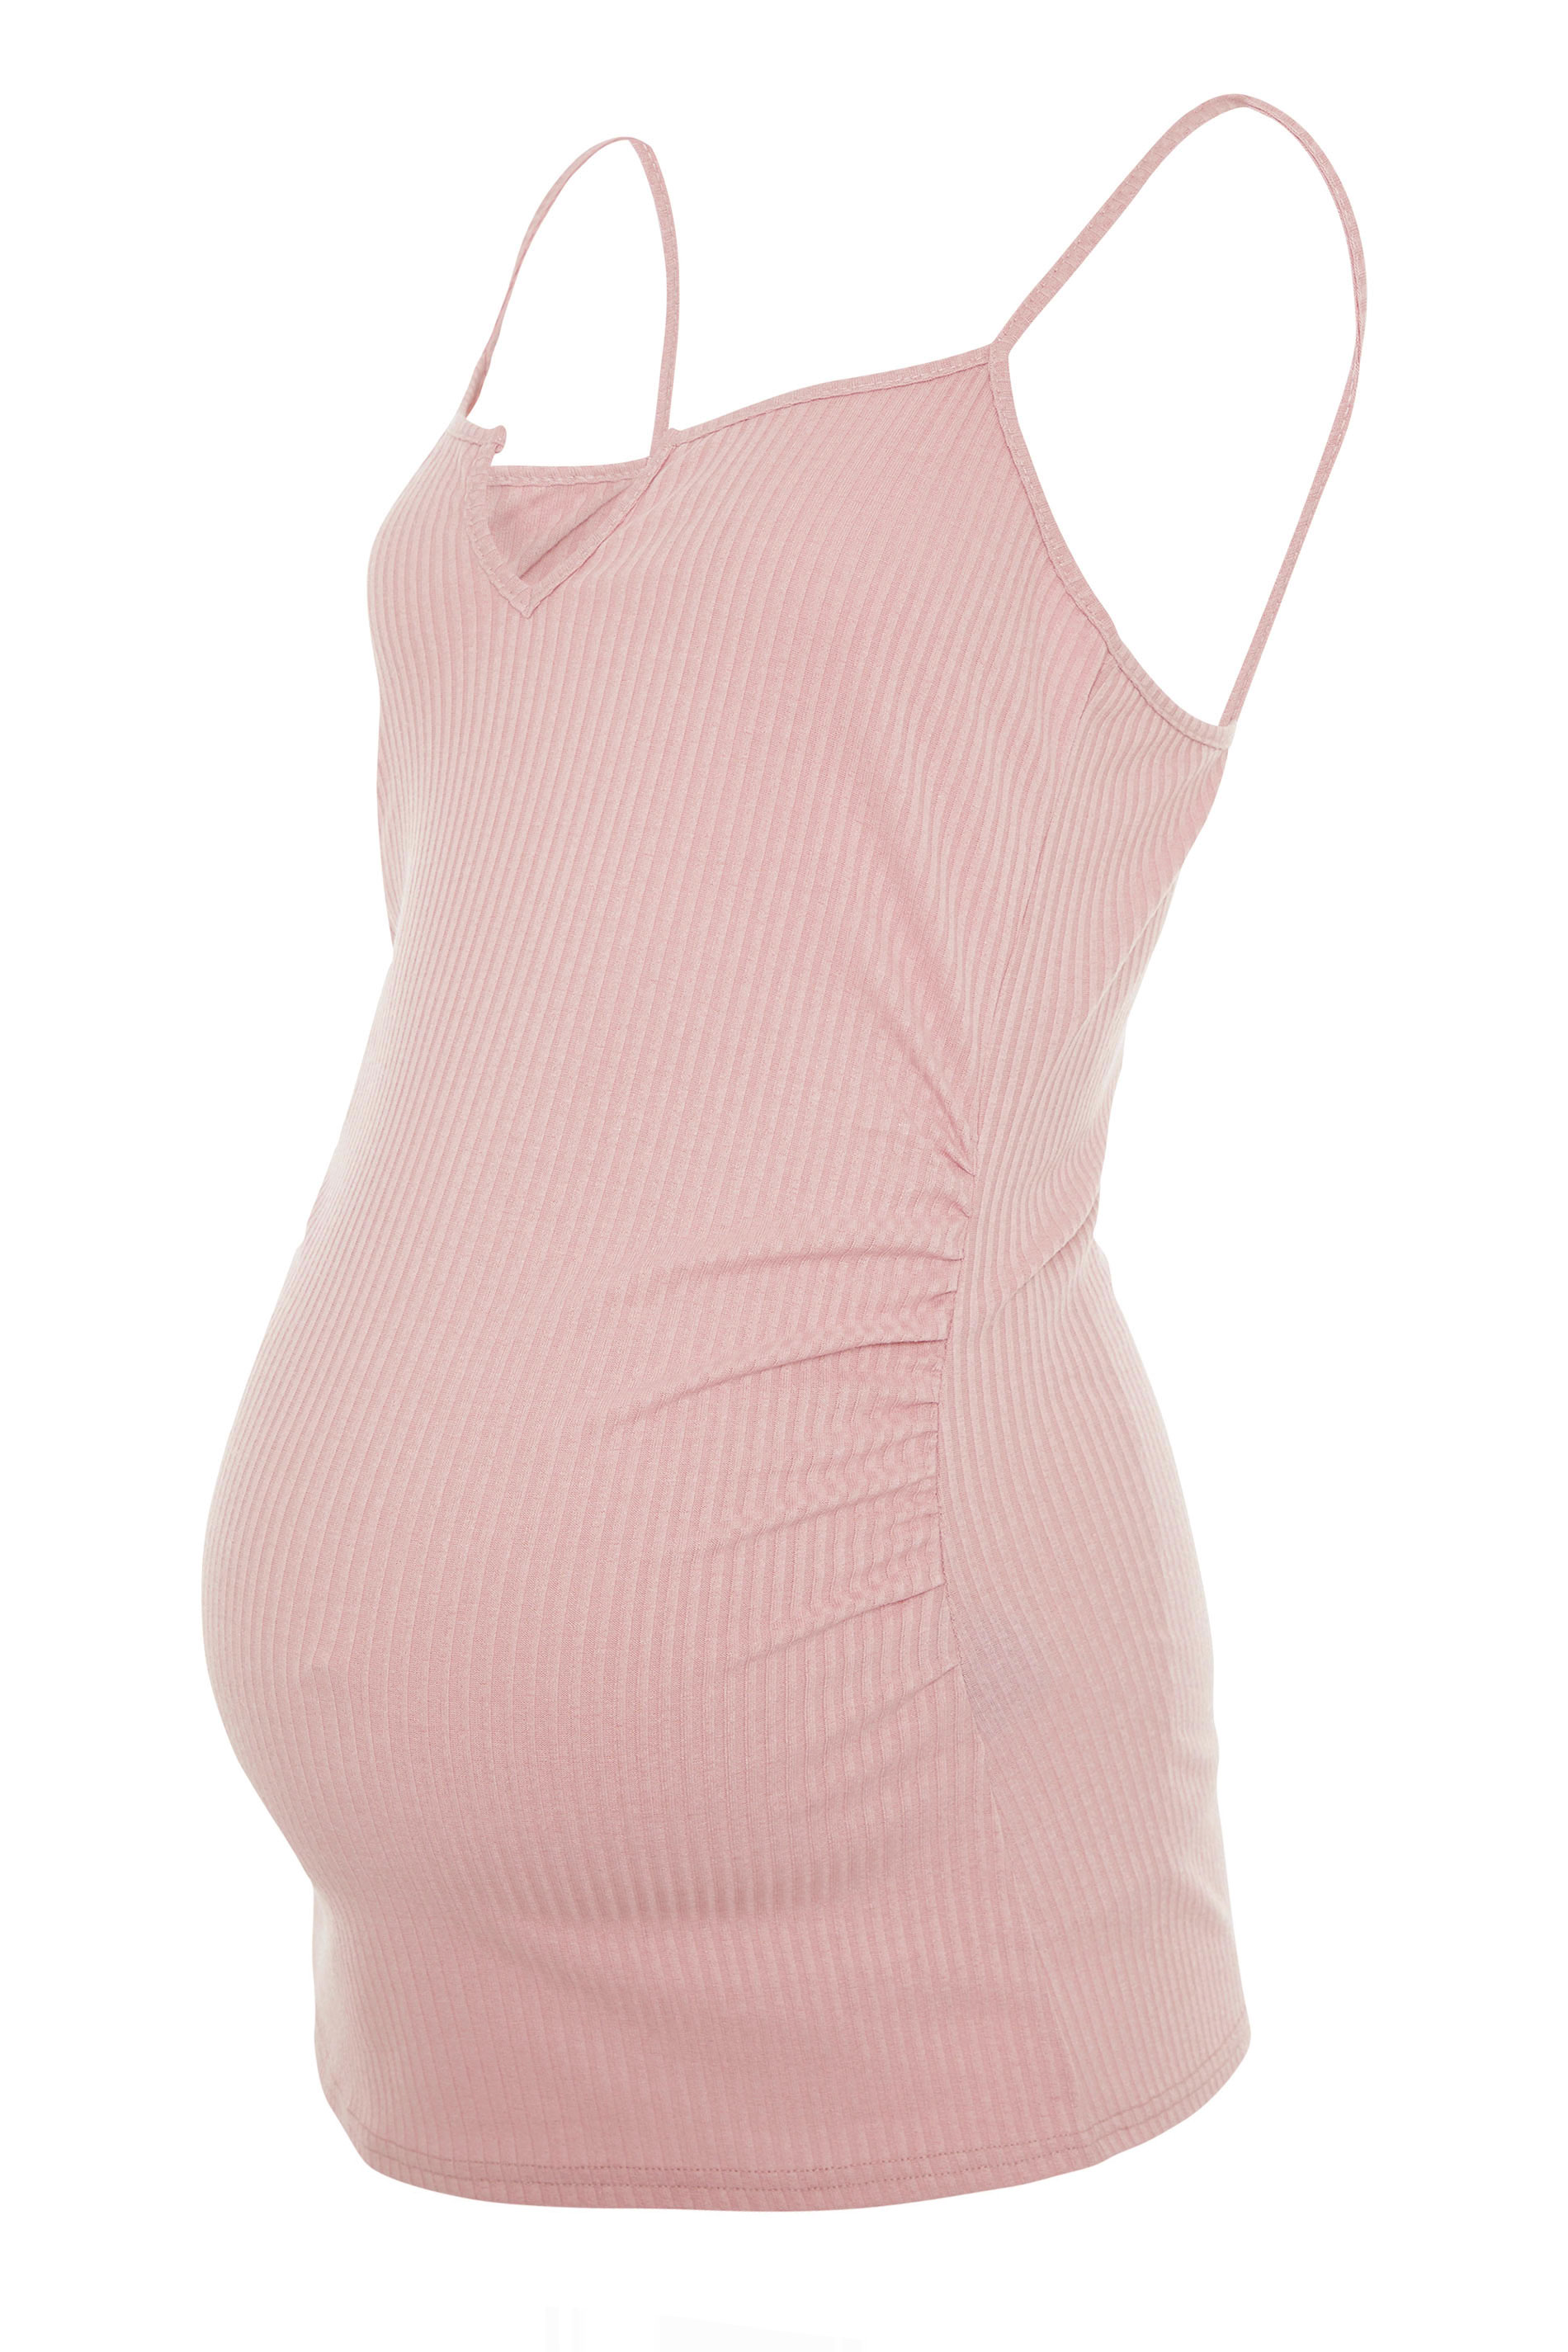 LTS Maternity Blush Pink Ribbed Cami Top | Long Tall Sally 1